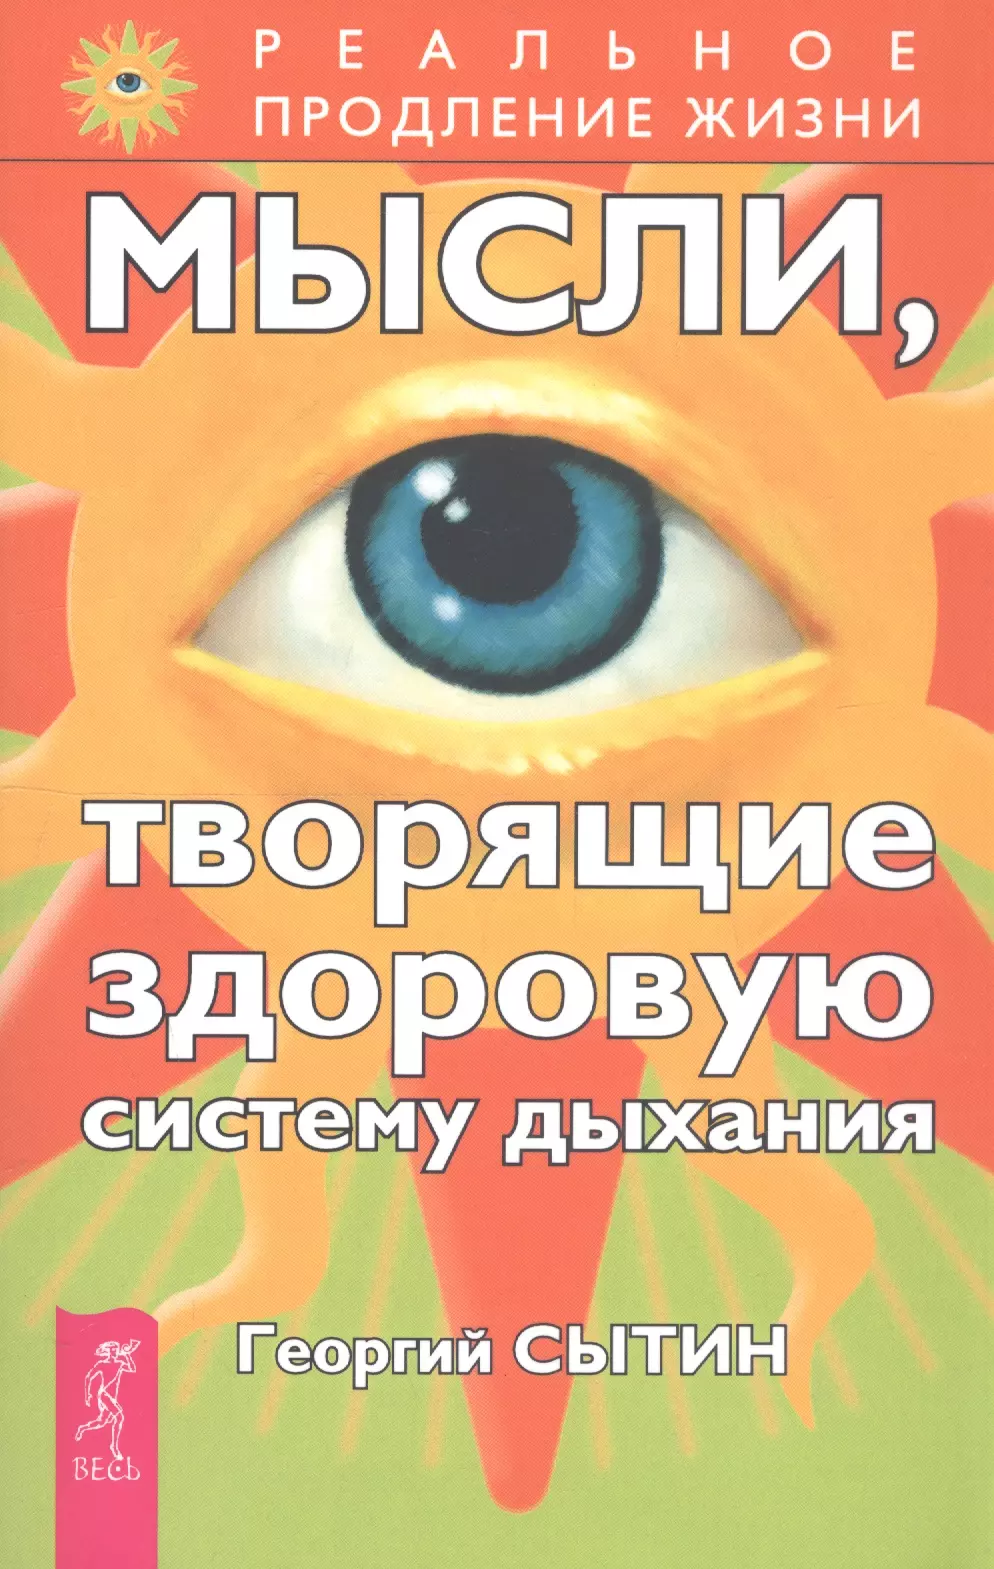 Сытин Георгий Николаевич - Мысли, творящие здоровую систему дыхания. 2-е изд.